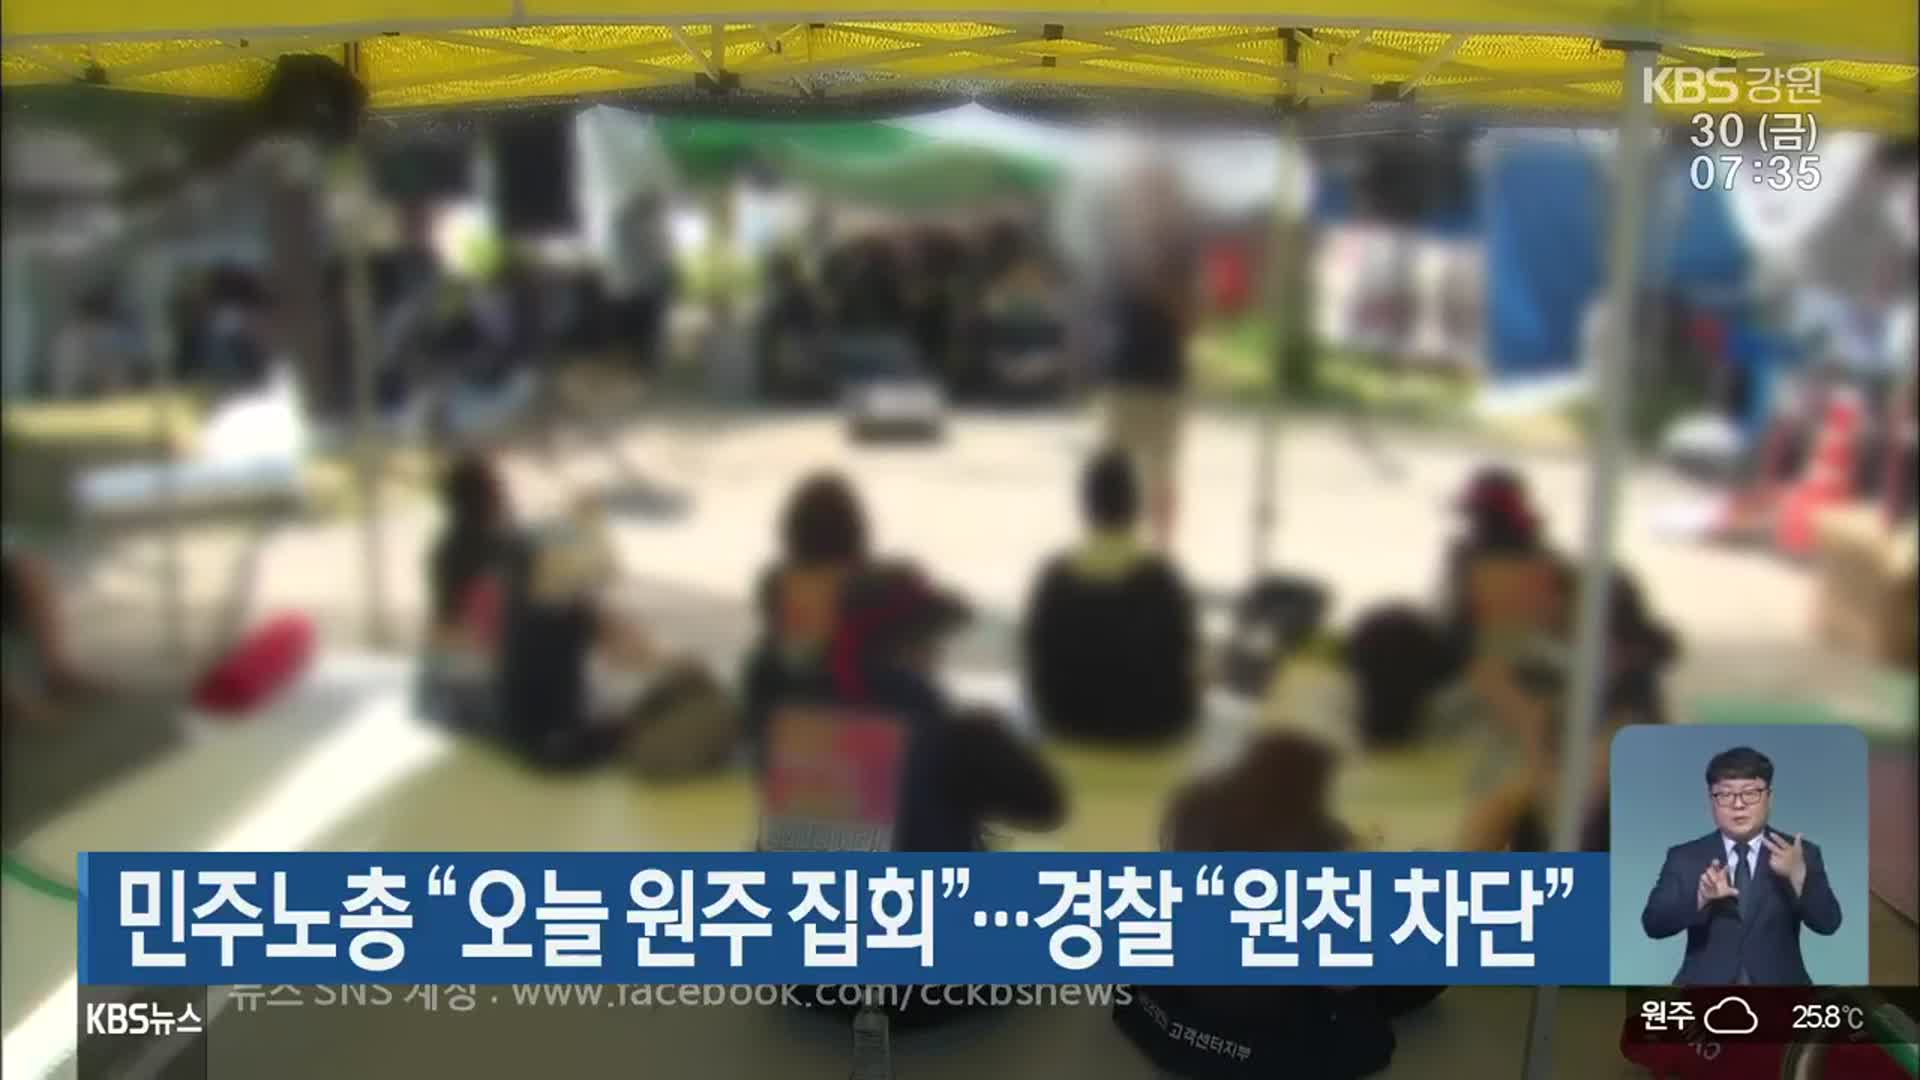 민주노총 “오늘 원주 집회”…경찰 “원천 차단”